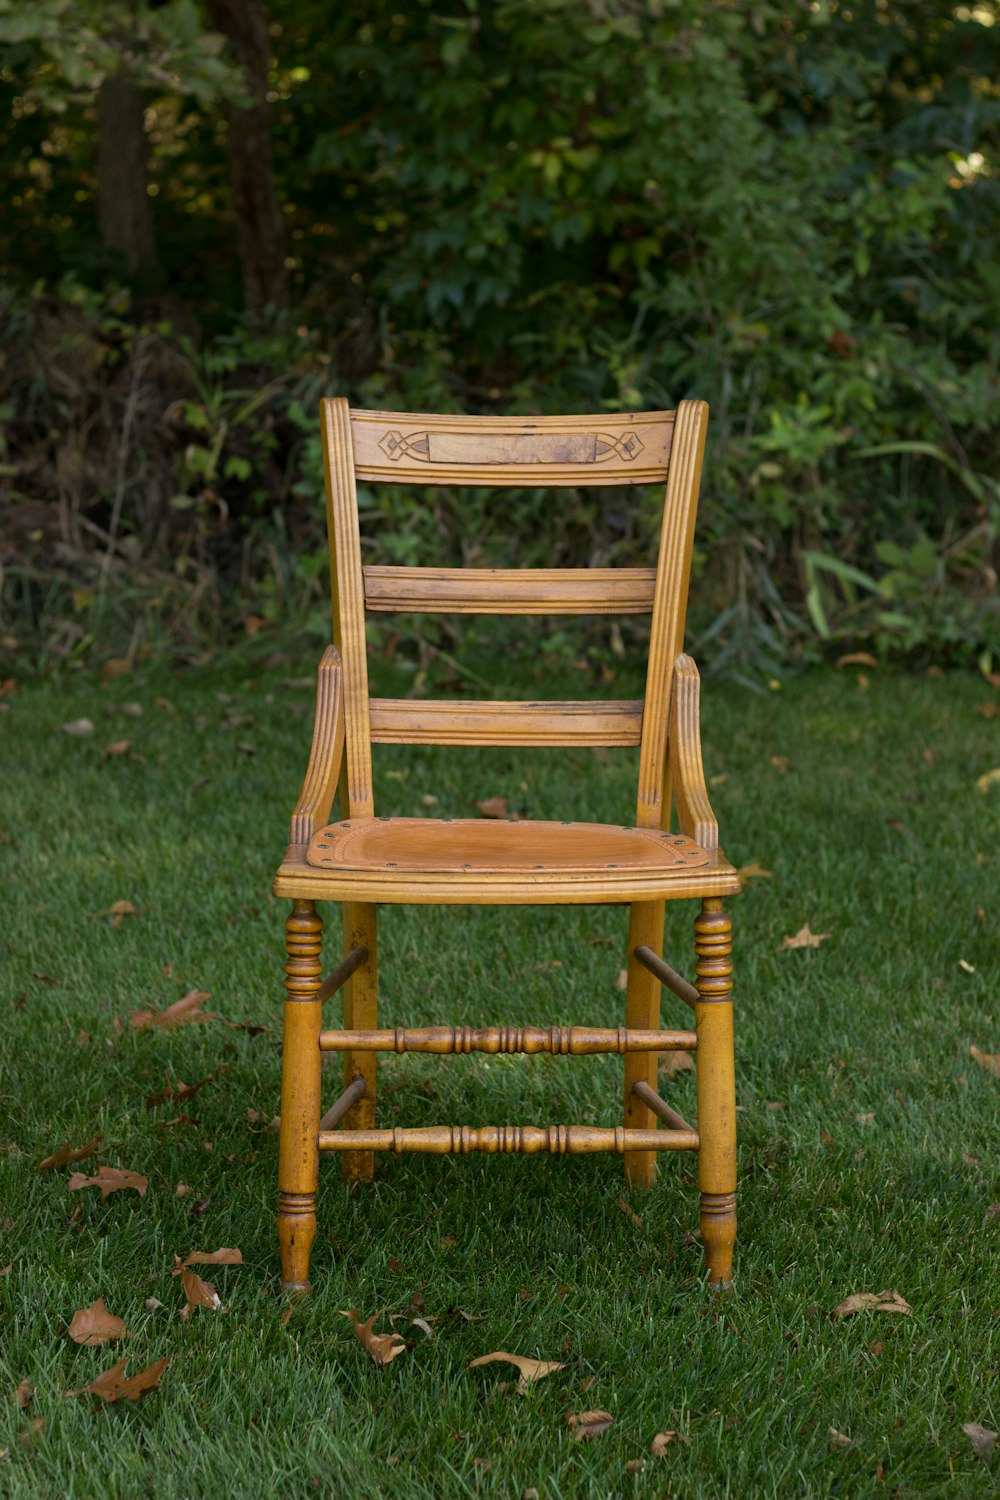 sedia di legno marrone sulla pianura ricoperta di erba